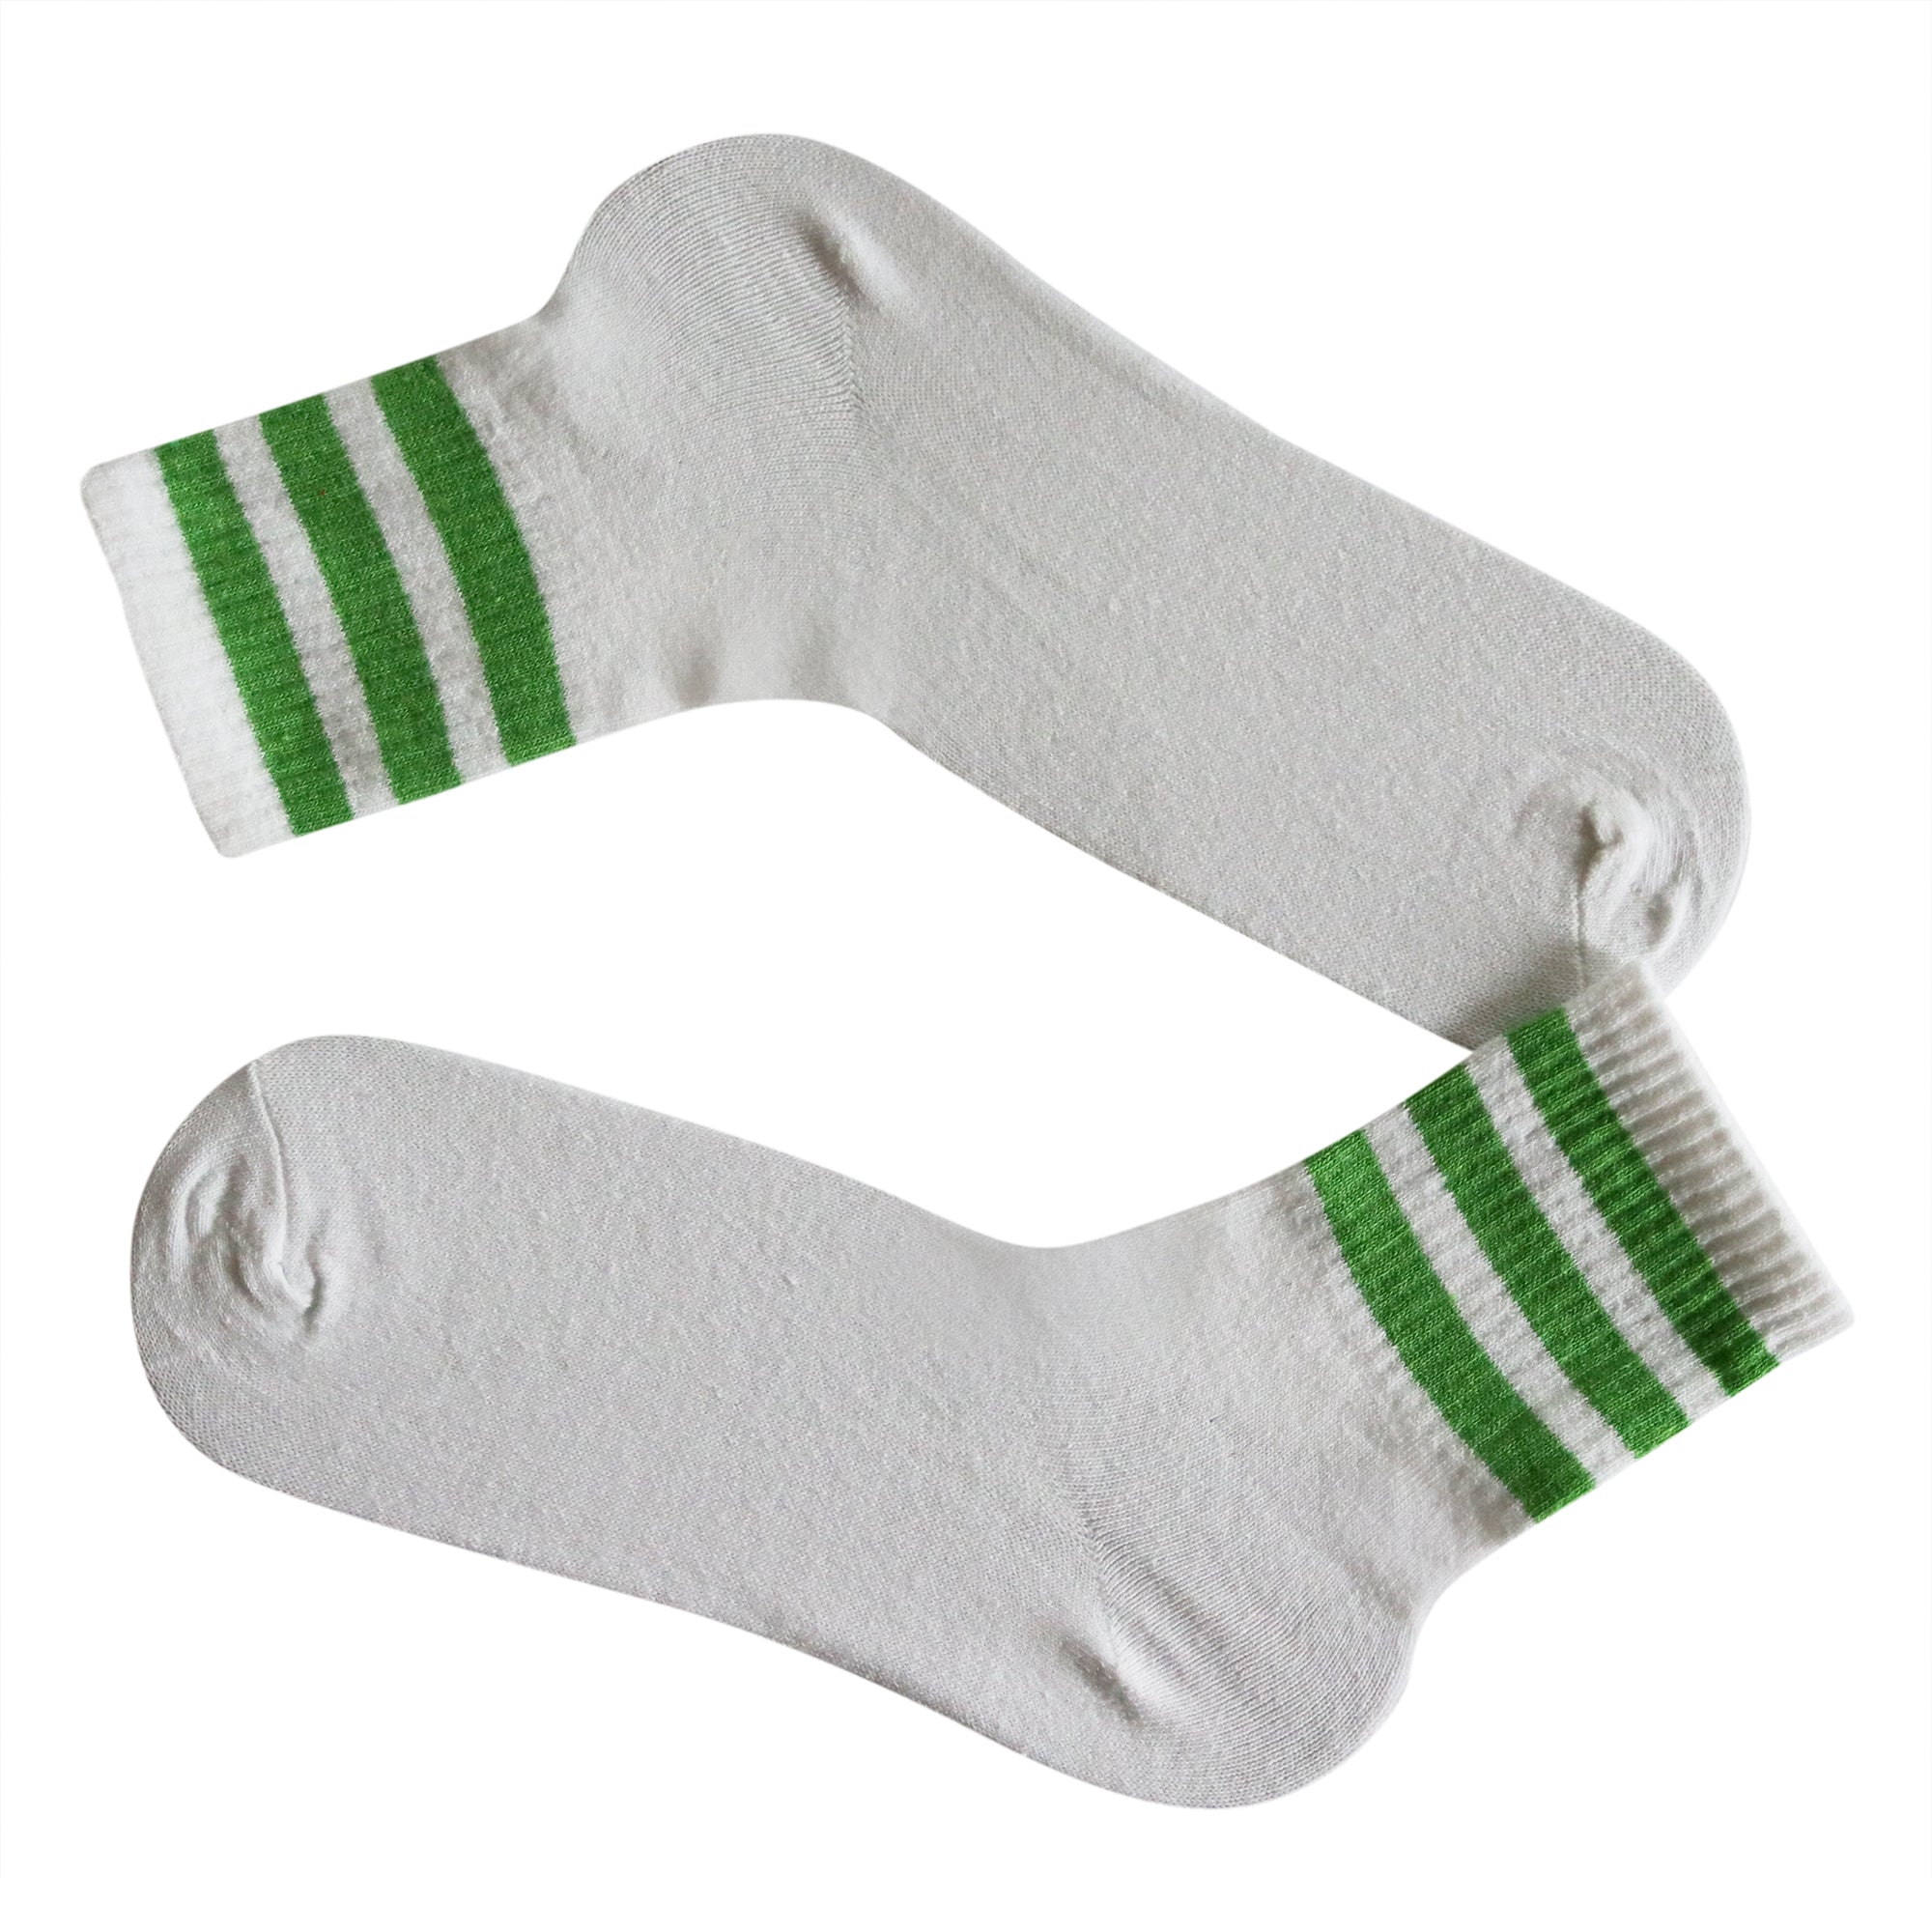 Louluu Women 3Stripe White-Green Colour Tennis Socks